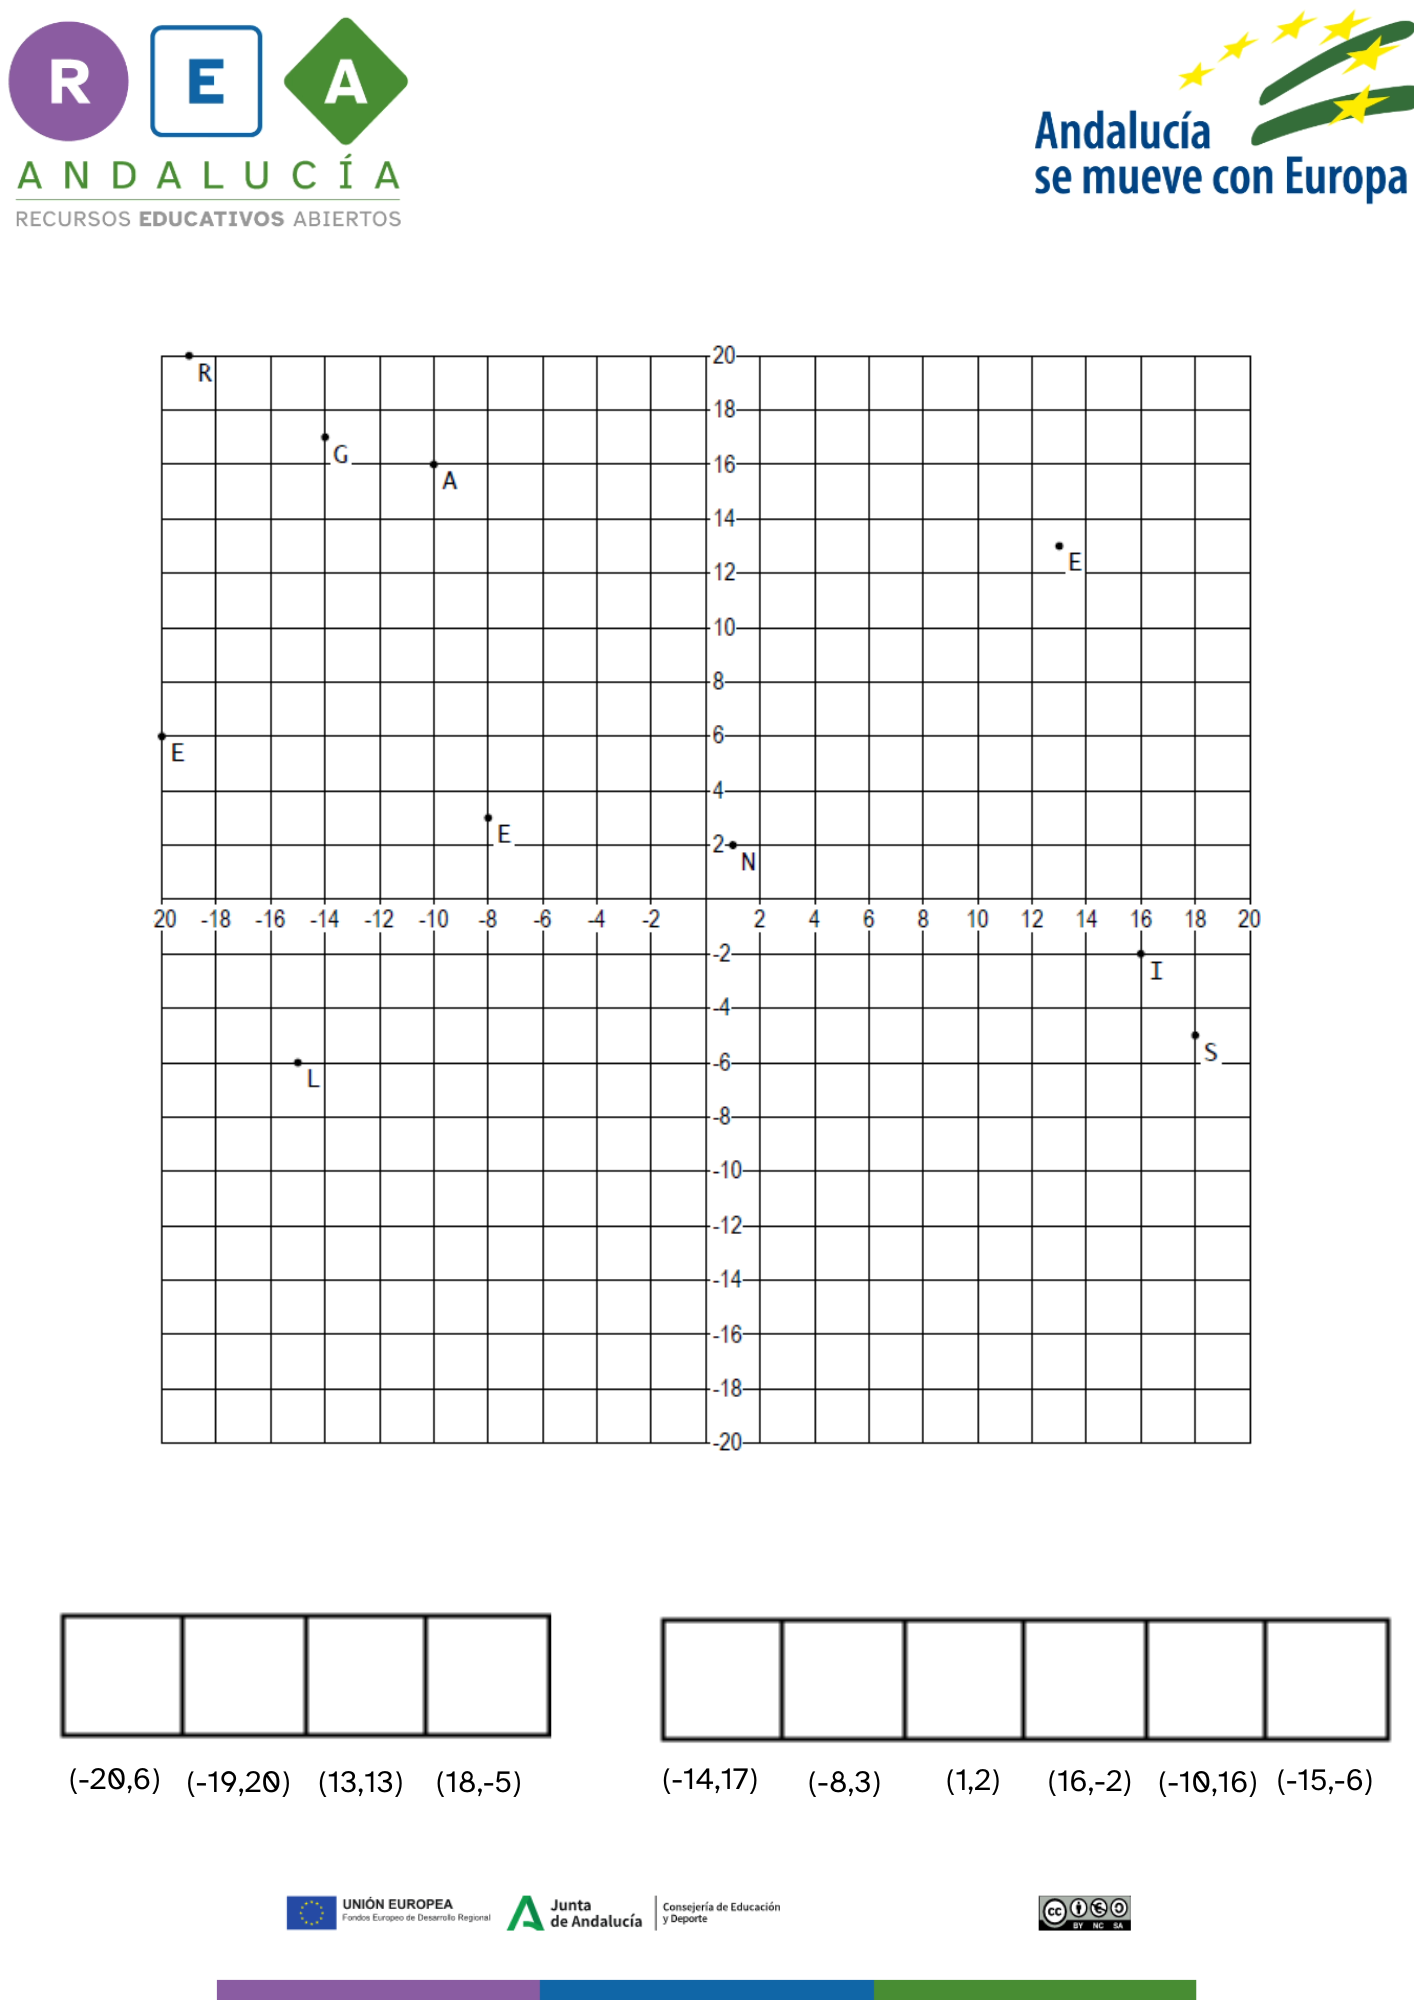 en la imagen se muestran dos líneas perpendiculares en el centro y una cuadrícula que resulta de líneas paralelas a las dos perpendiculares. Cada cuadro está numerado y aparecen diferentes letras que nombran a una serie de puntos dispuestos en la cuadrícula. Al final hay una serie de casillas en blanco con una coordeanda al pie de cada una